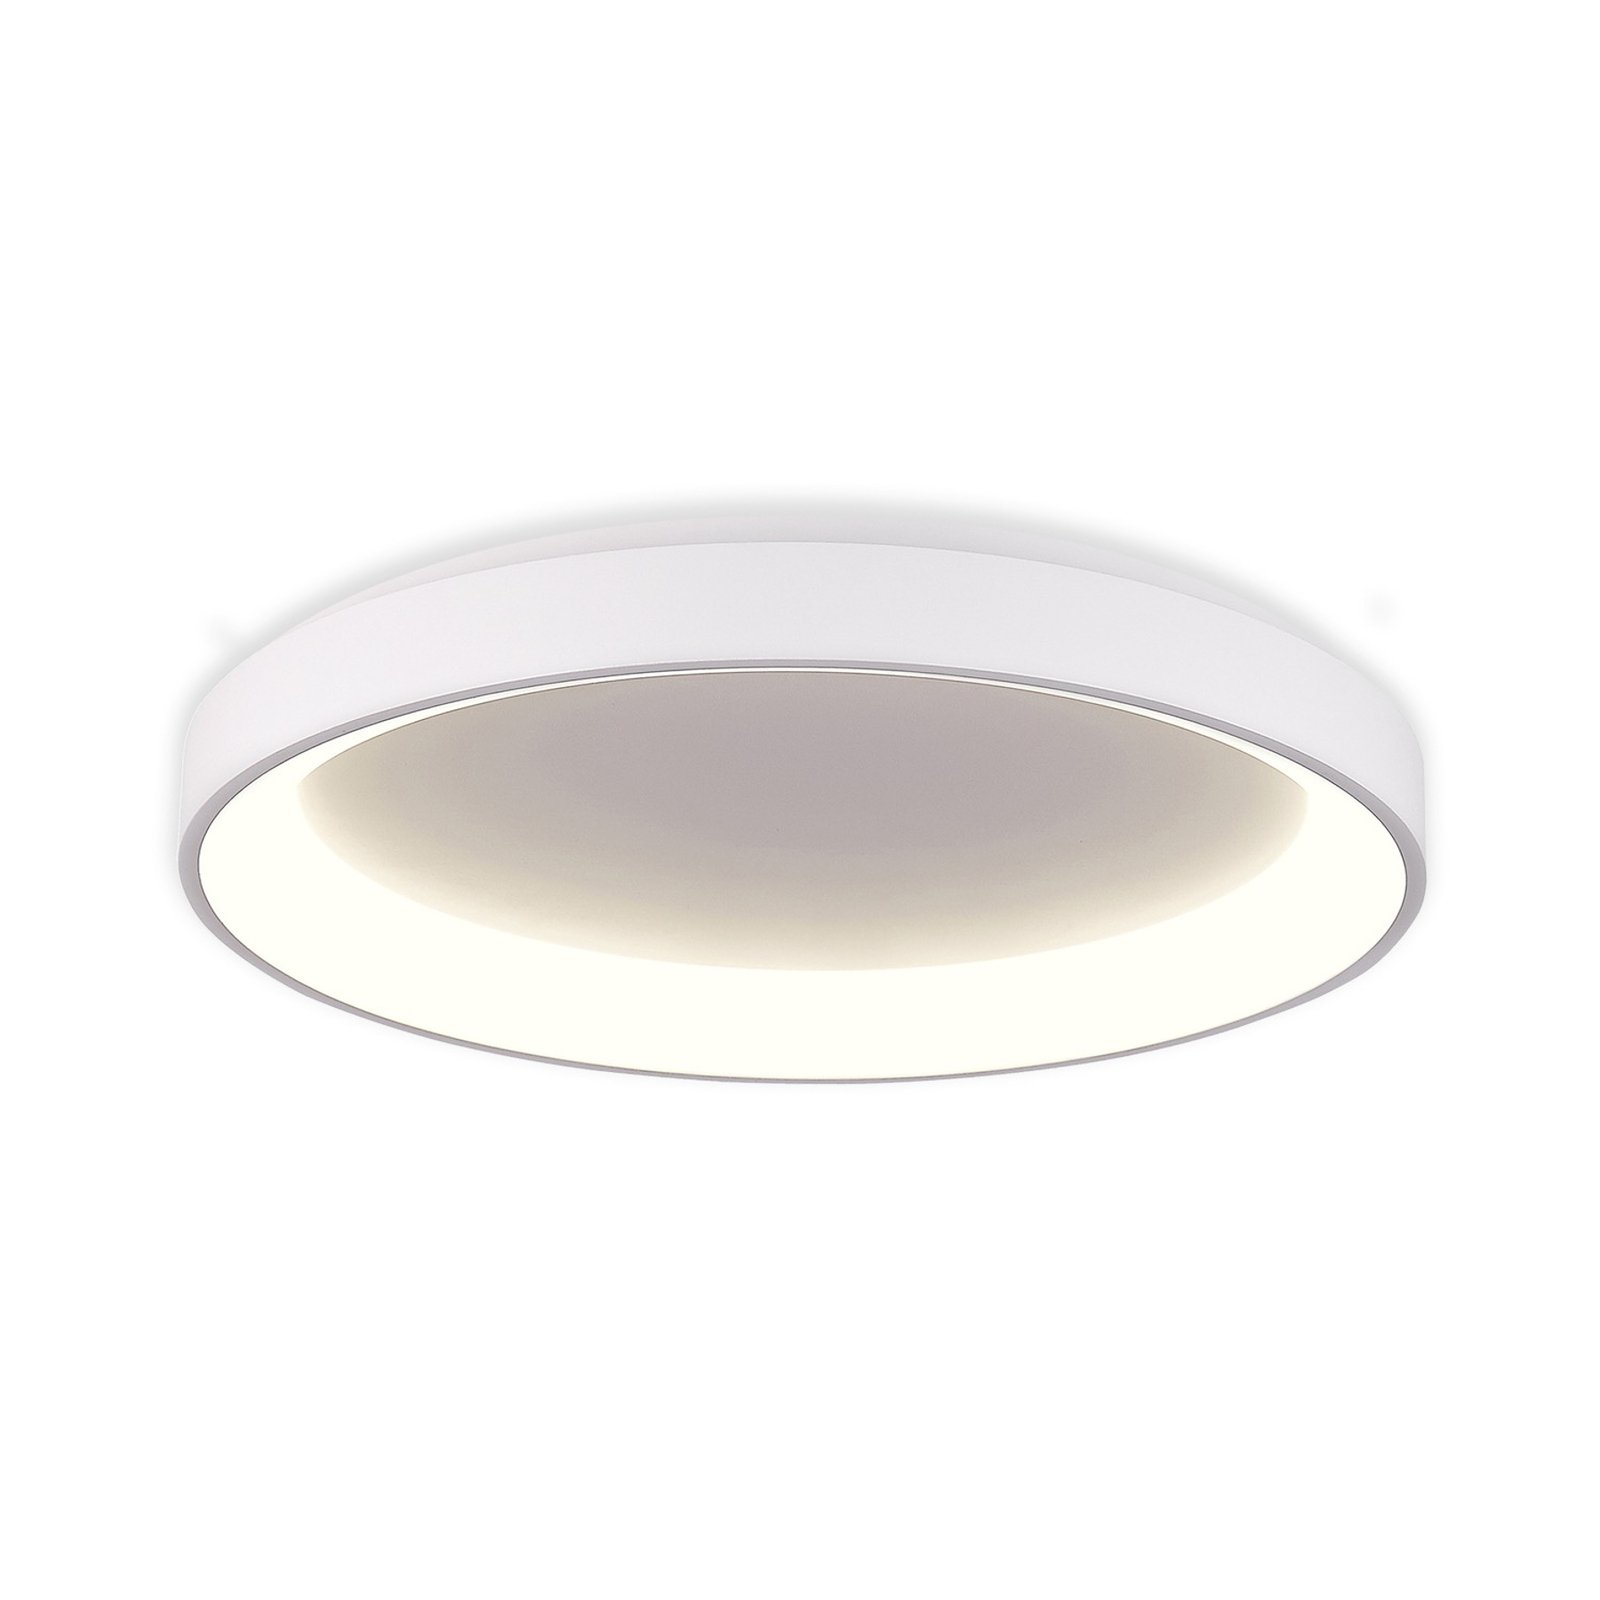 Grace LED ceiling light, white, Ø 58 cm, Casambi, 50 W